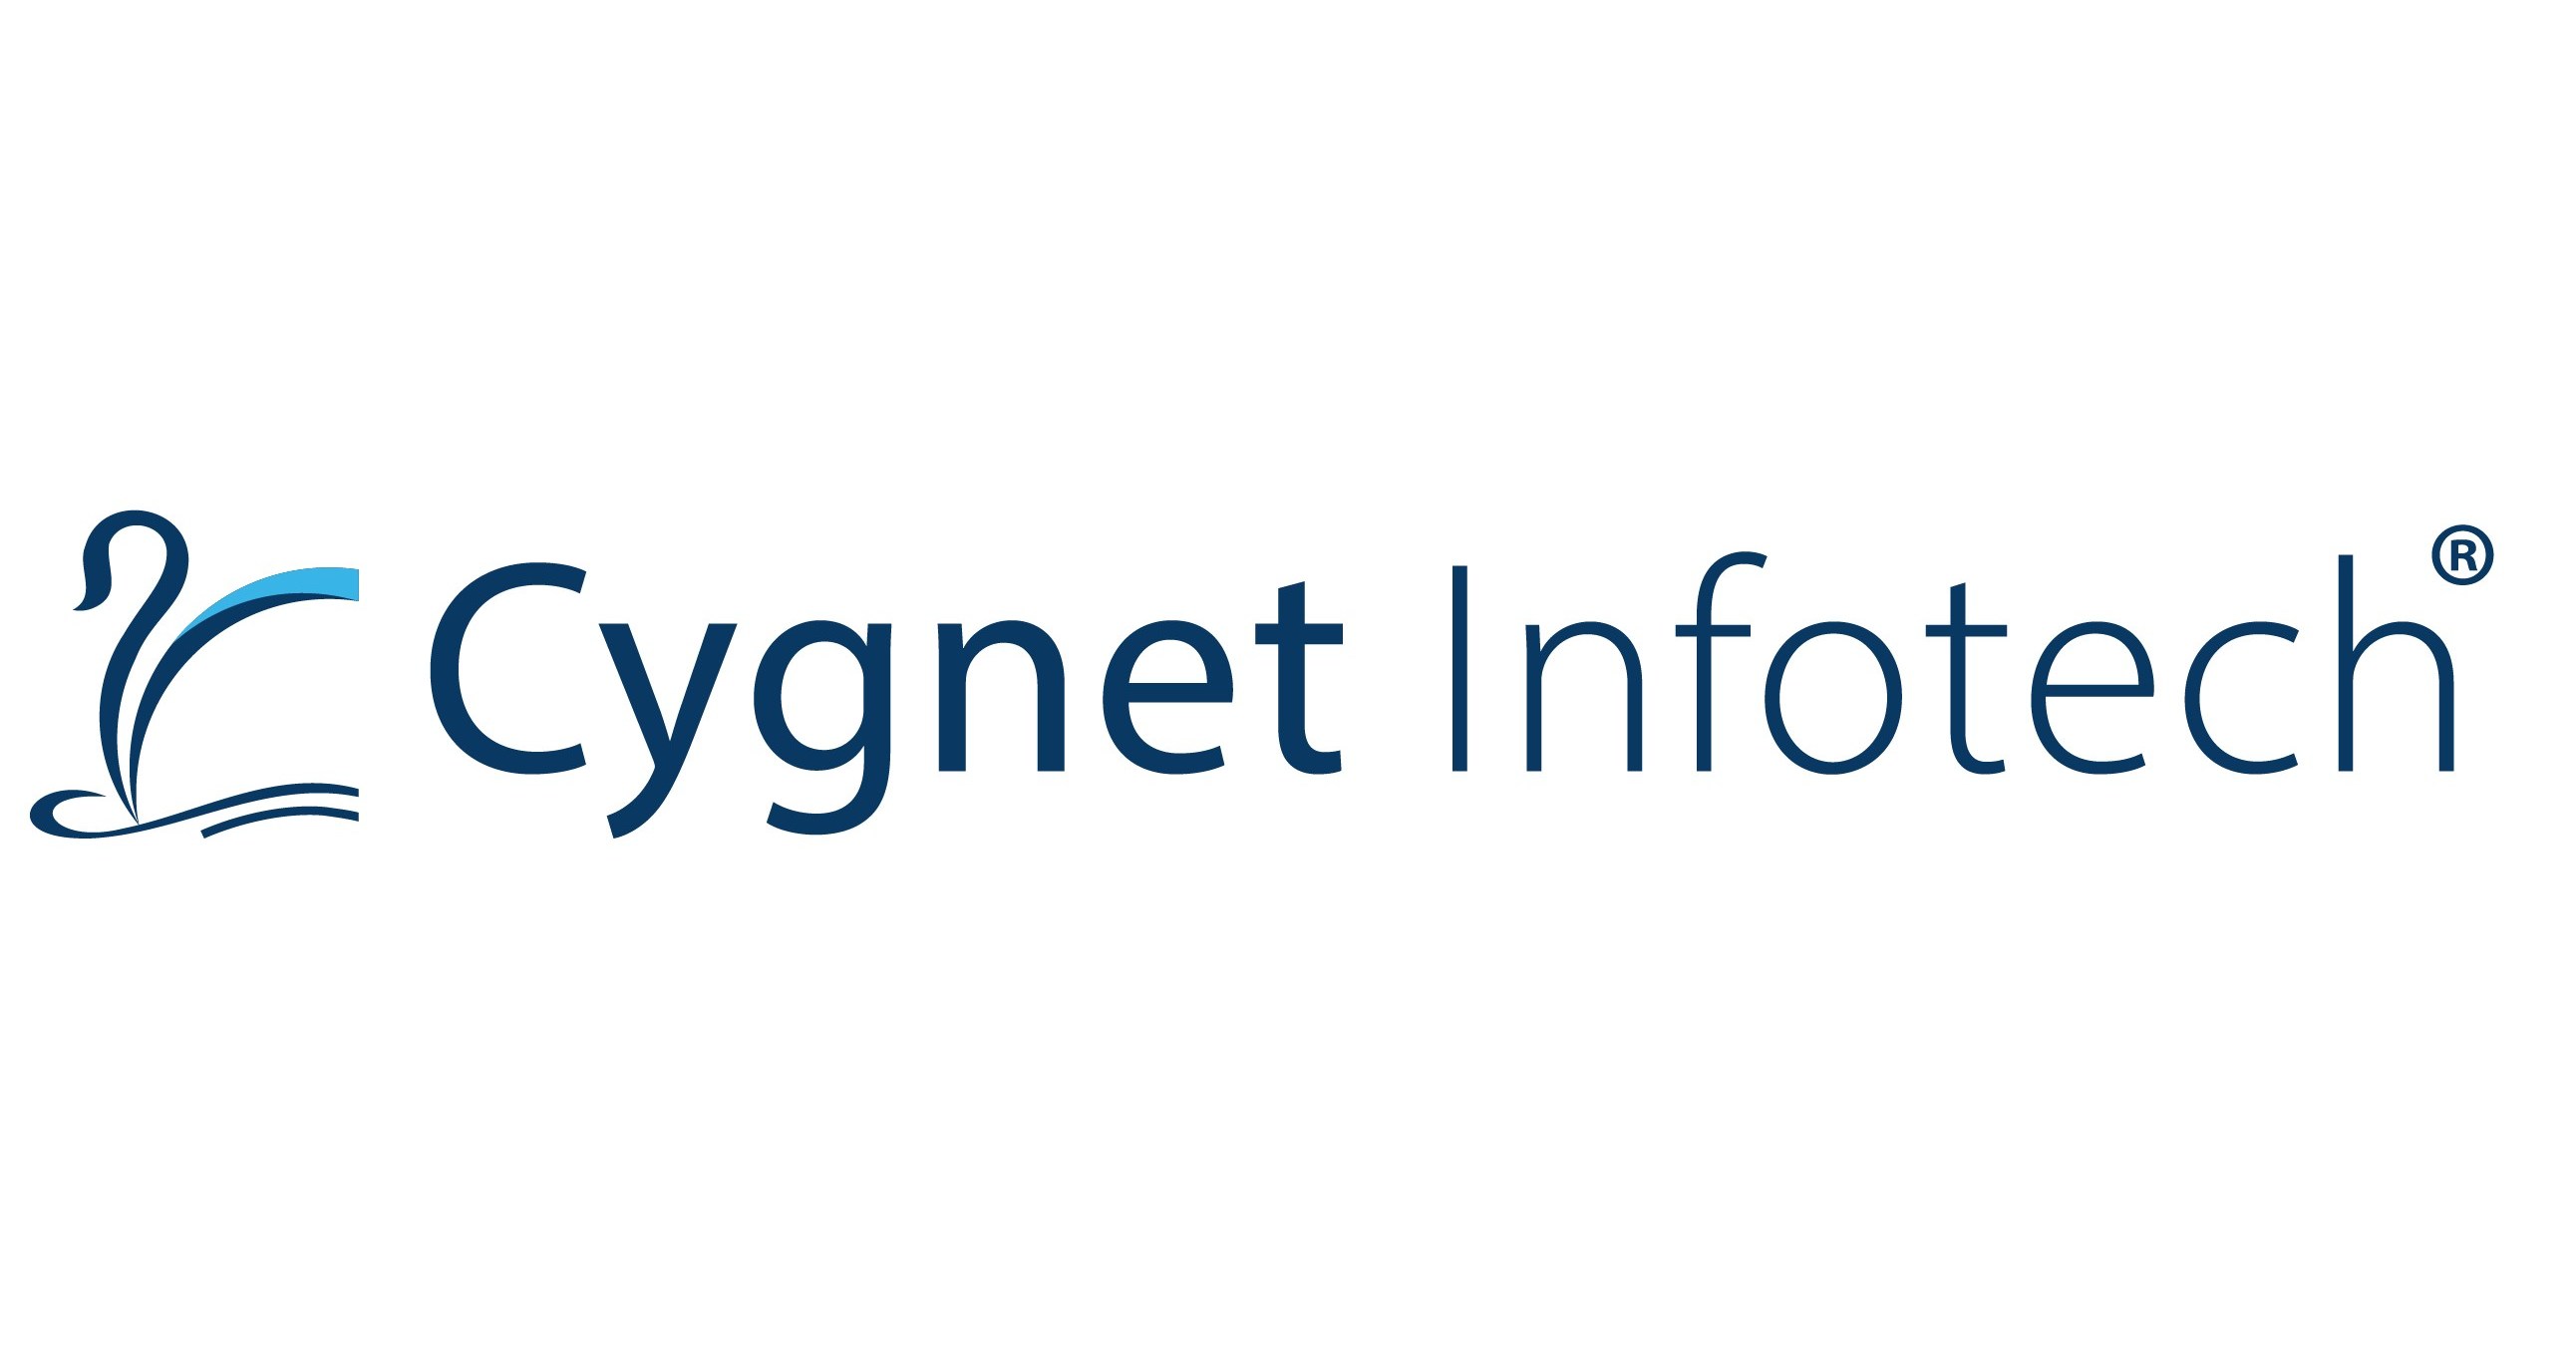 Cygnet Infotech becomes an OpenPeppol member